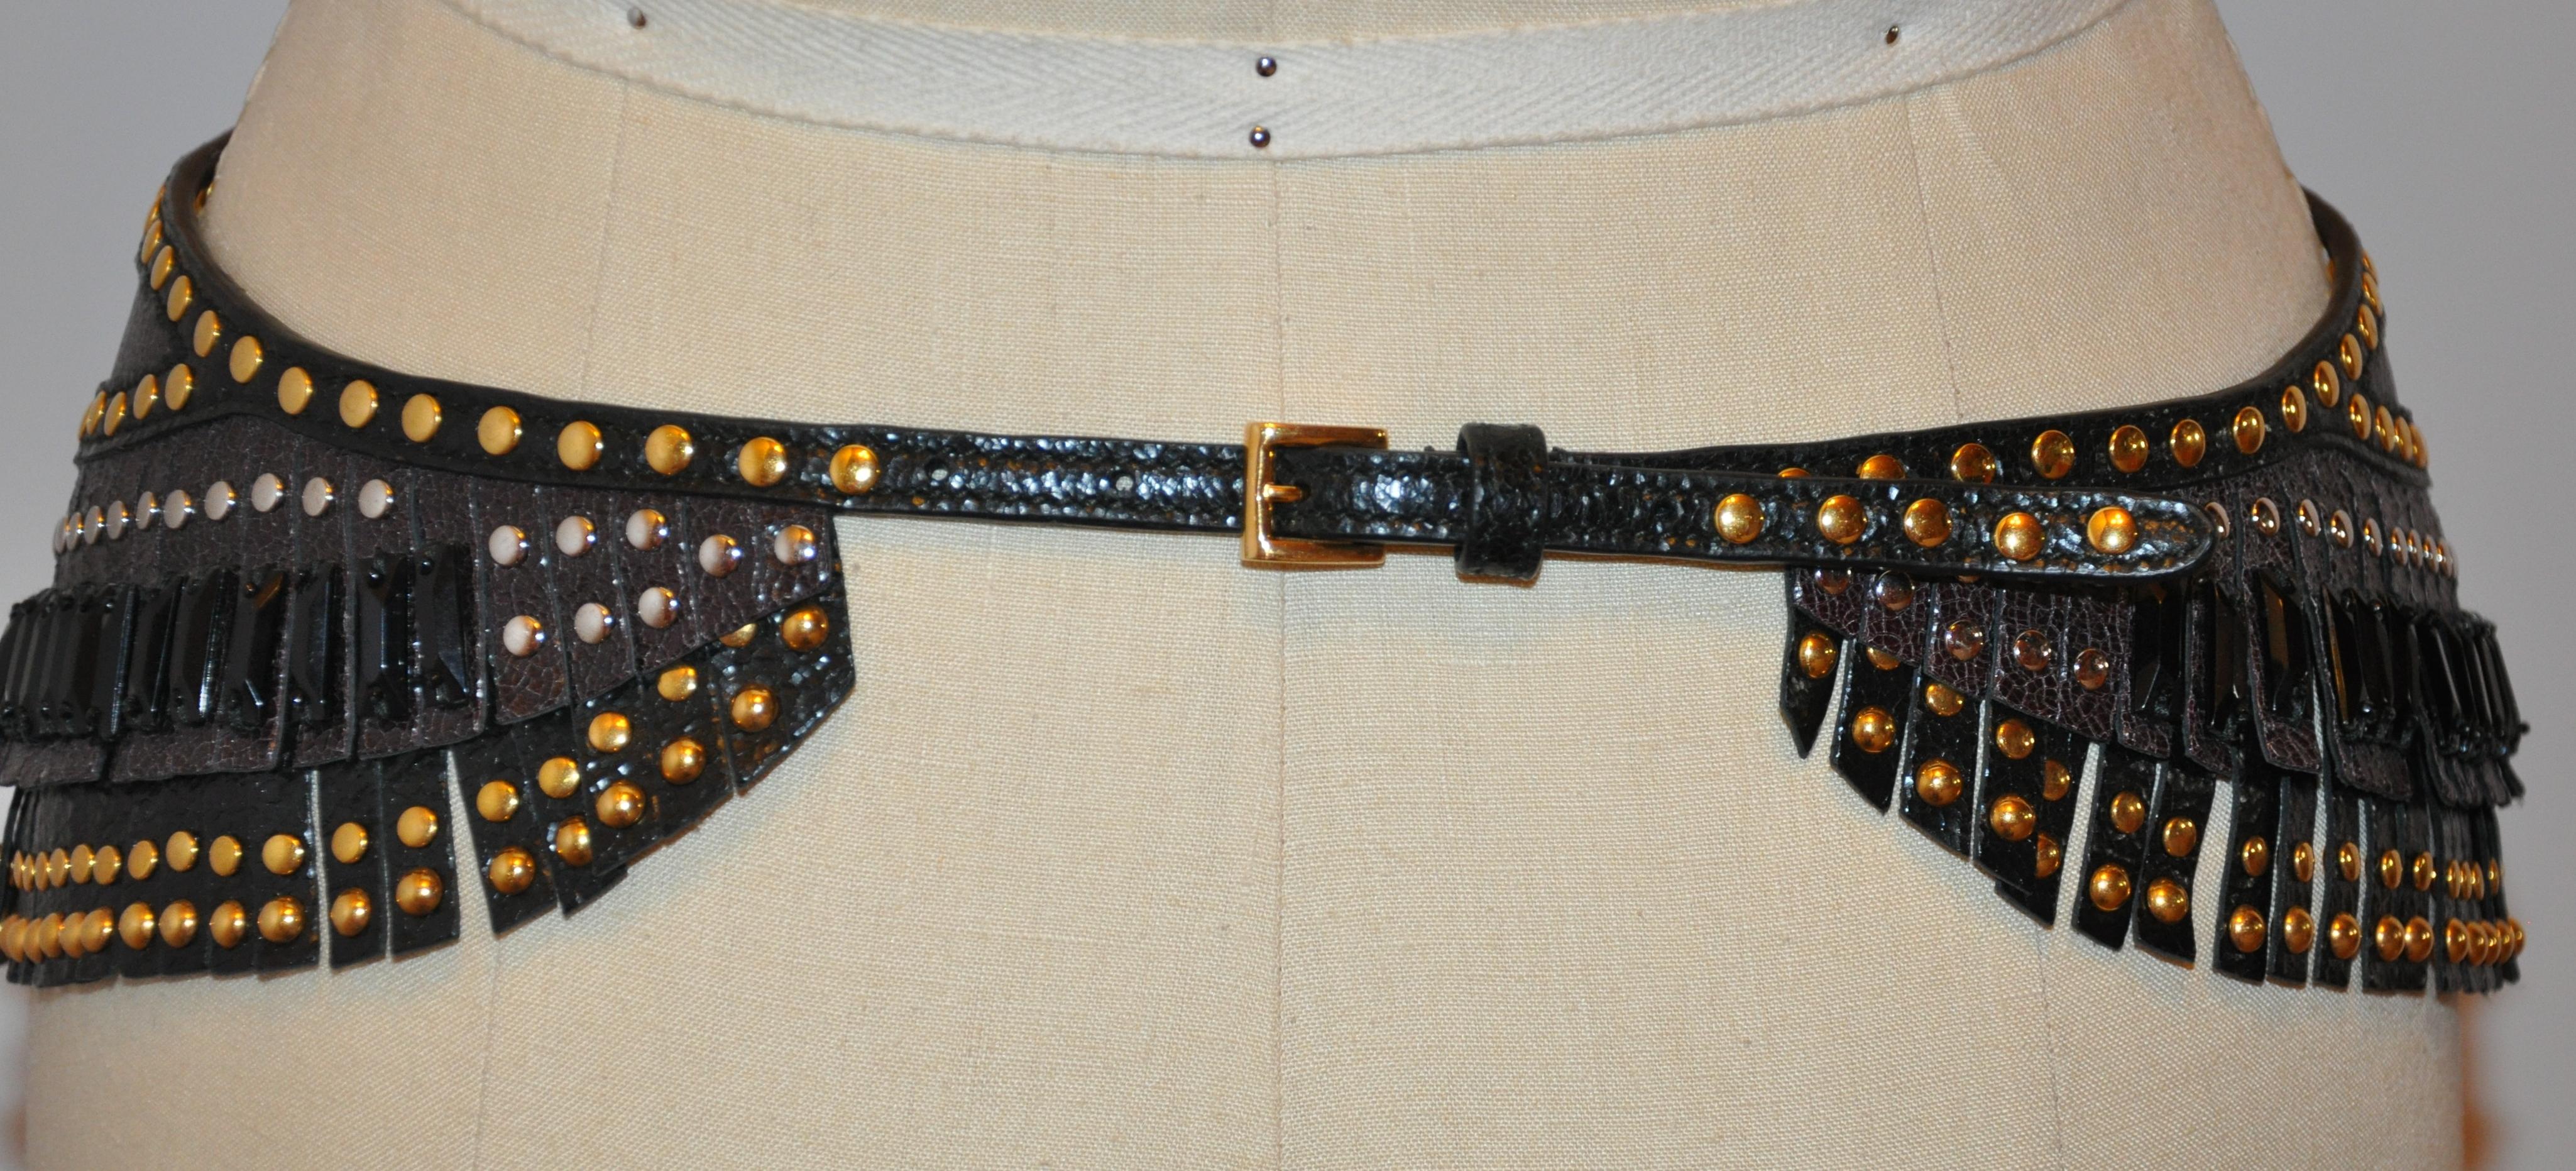        La ceinture à boucle frangée marron coco de Prada est ornée de plusieurs clous dorés sur toute la longueur, accentués par des perles oblongues noires à billes multiples. La taille mesure de 28 à 32 pouces selon votre ajustement le long des